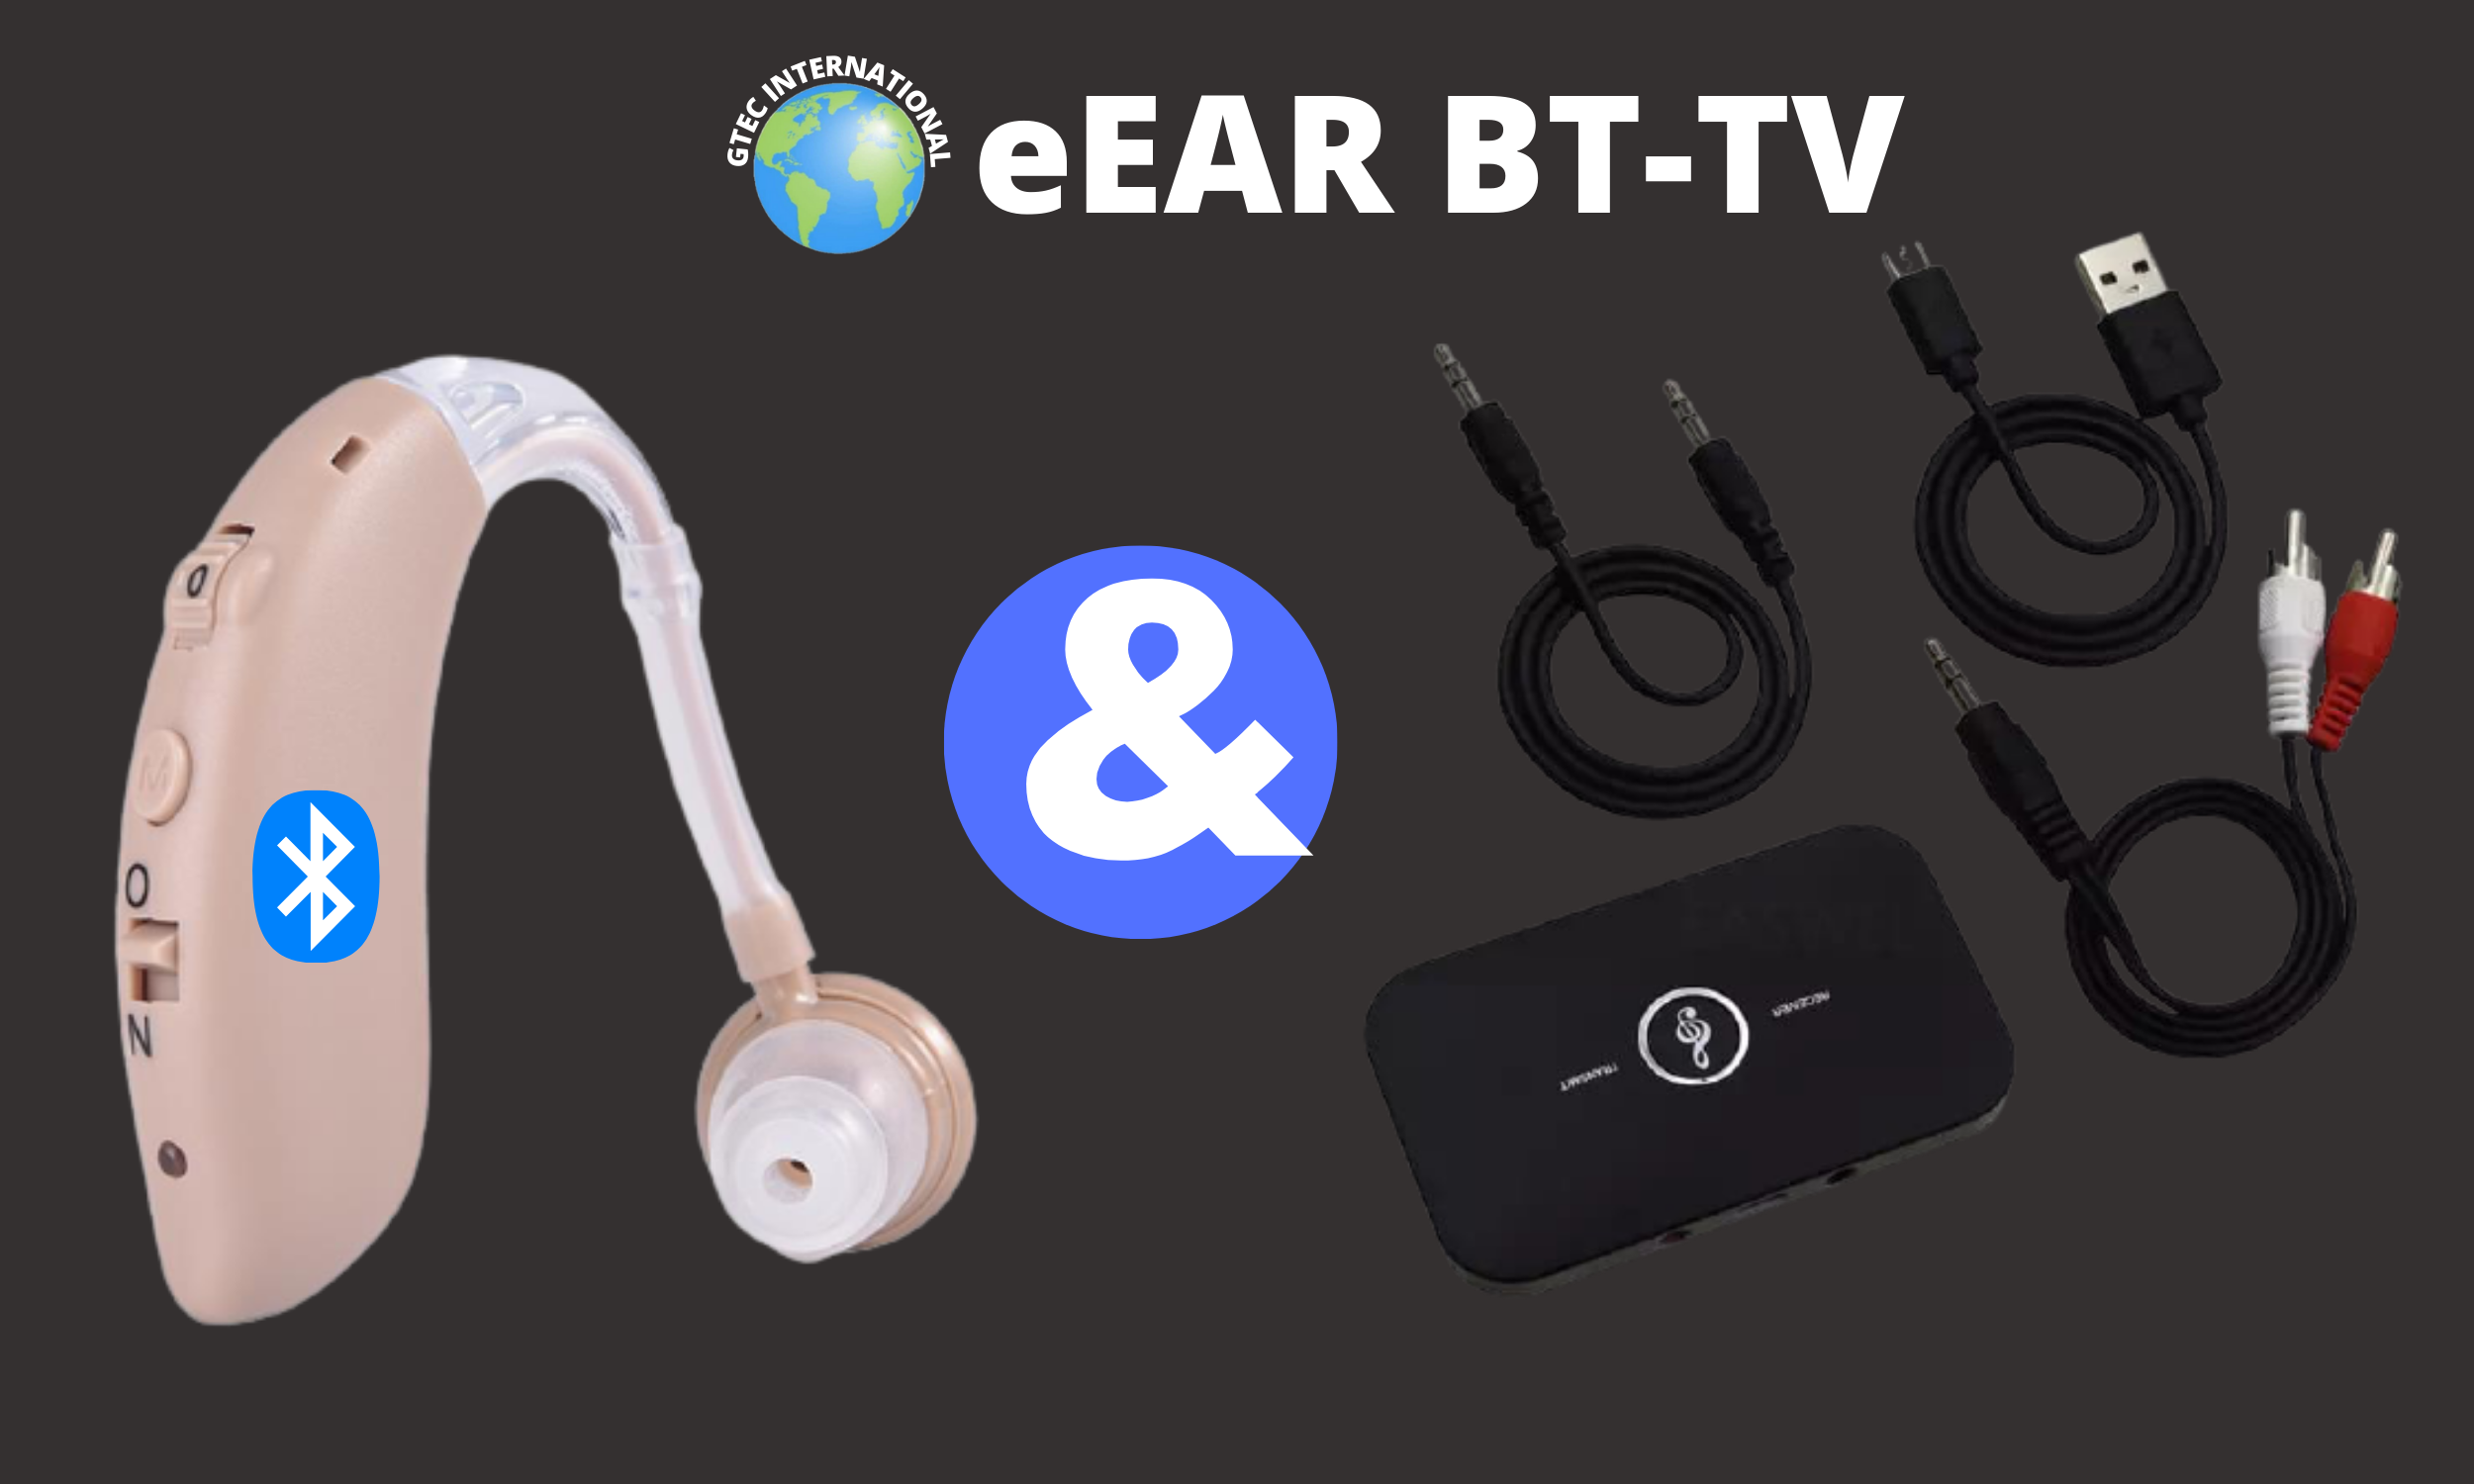 eEAR Bluetooth TV systém eEAR BT-TV-01 Perfektní řešení pro poslech TV pro uživatele sluchadel a sluchově postižené Navrženo a vyrobeno v USA